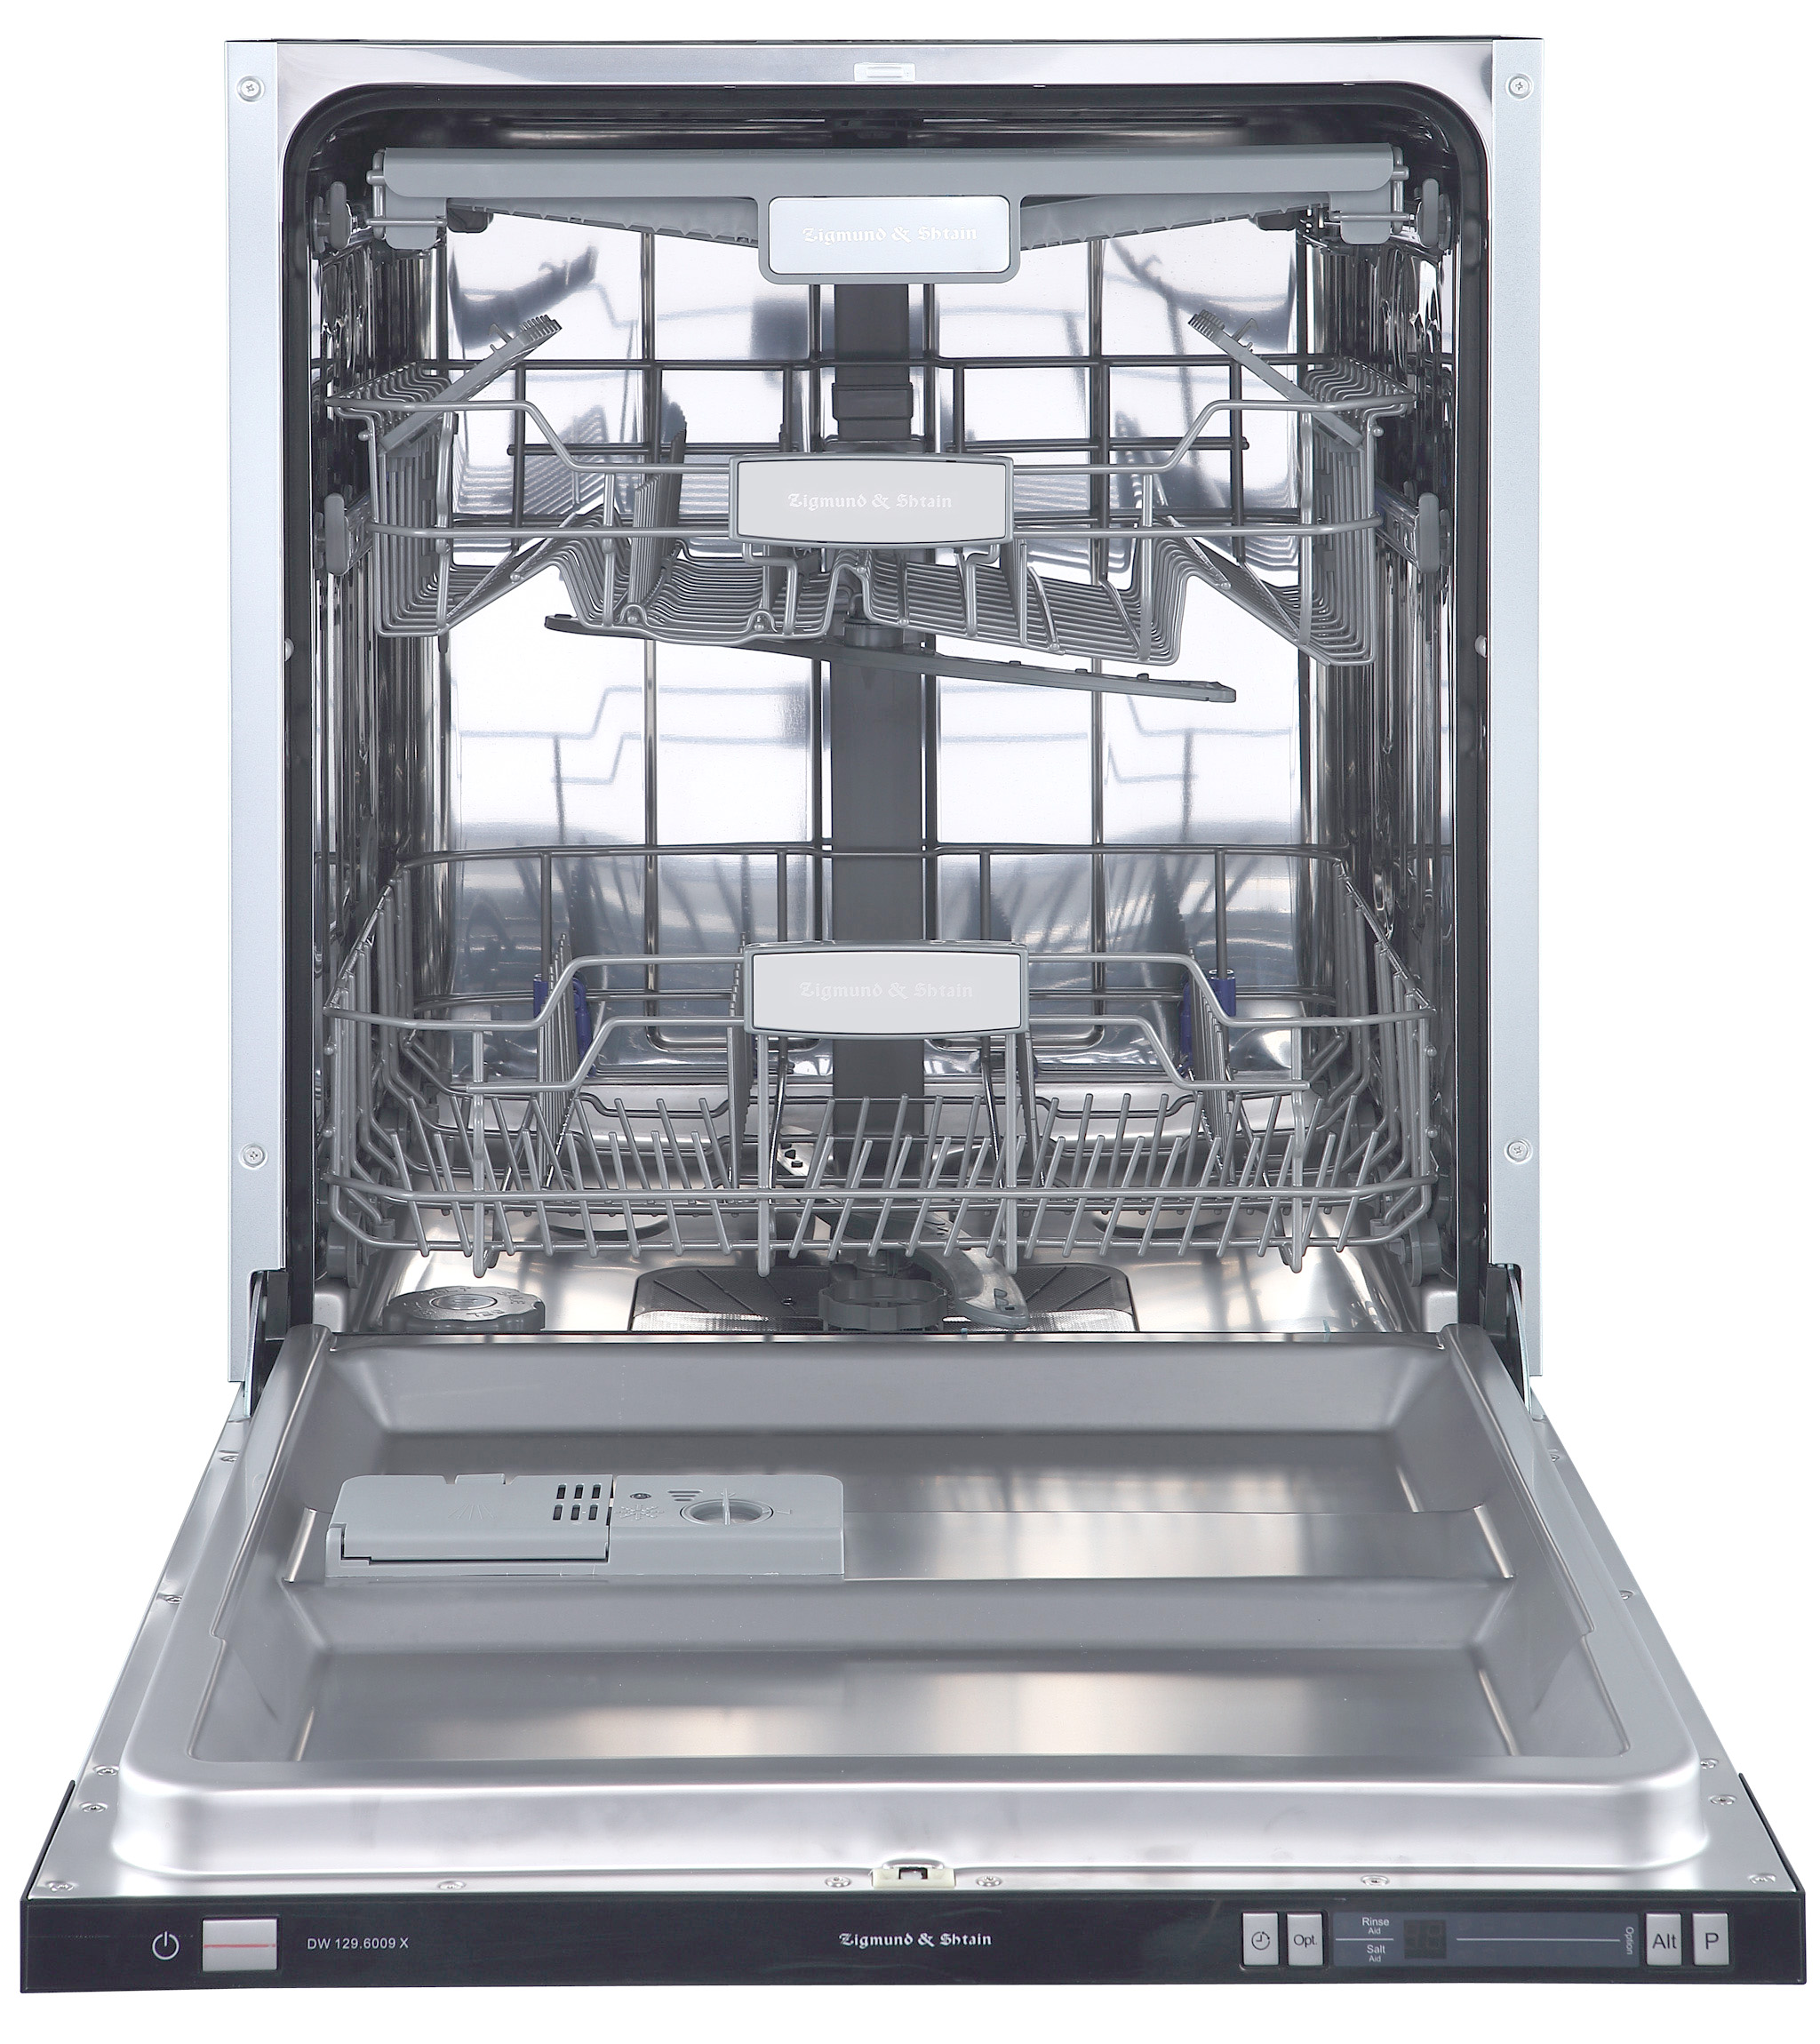 Встраиваемая посудомоечная машина Zigmund & Shtain DW 129.6009 X встраиваемая посудомоечная машина simfer dgb4601 вместимость 9 комплектов отдельная корзина для приборов энергоэффективность а